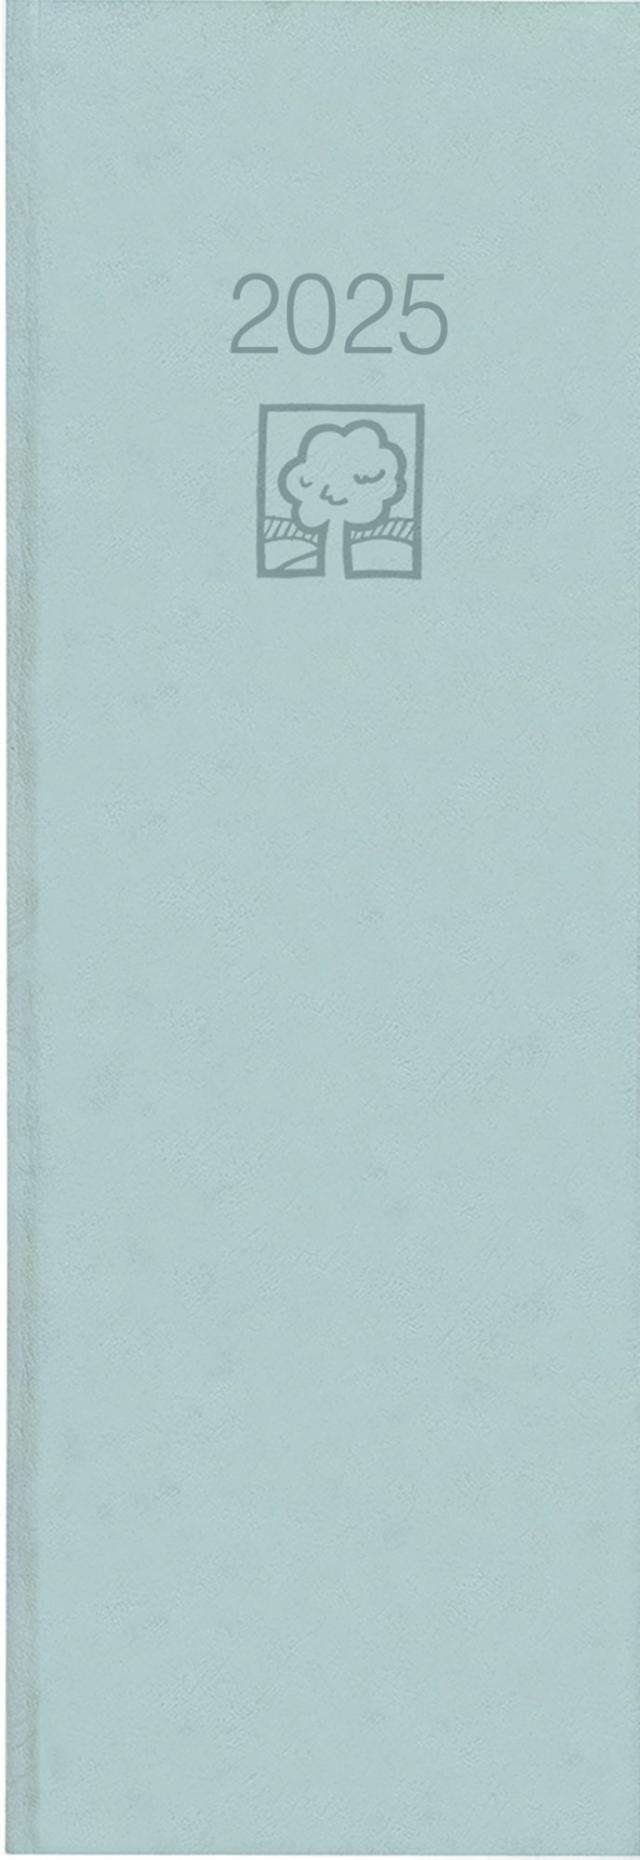 Zettler - Tagevormerkbuch 2025 recycling, 10,4x29,6cm, Taschenkalender mit 400 Seiten, 1 Tag auf 1 Seite, Tages-, und Wochen- und Zinstagezählung, Zweimonatsübersicht und deutsches Kalendarium